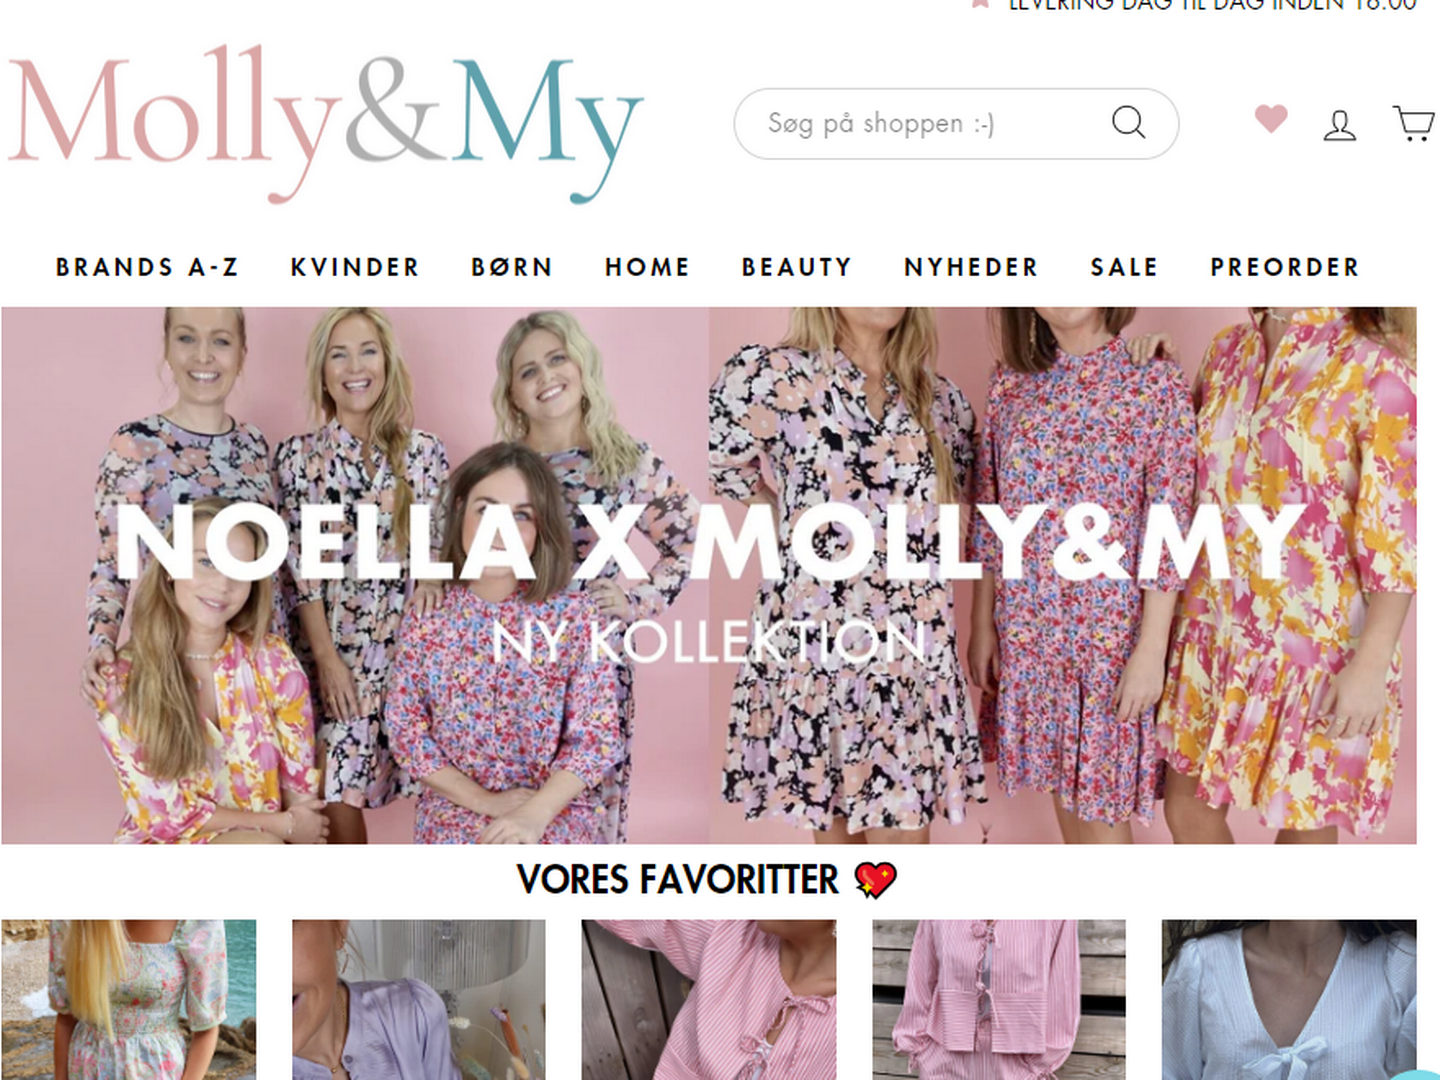 Molly & My startede med et sortiment bestående af børnetøj, men udvidede i 2017 med et sortiment til kvinder. Foto: Screenshot af Molly & Mys webshop.